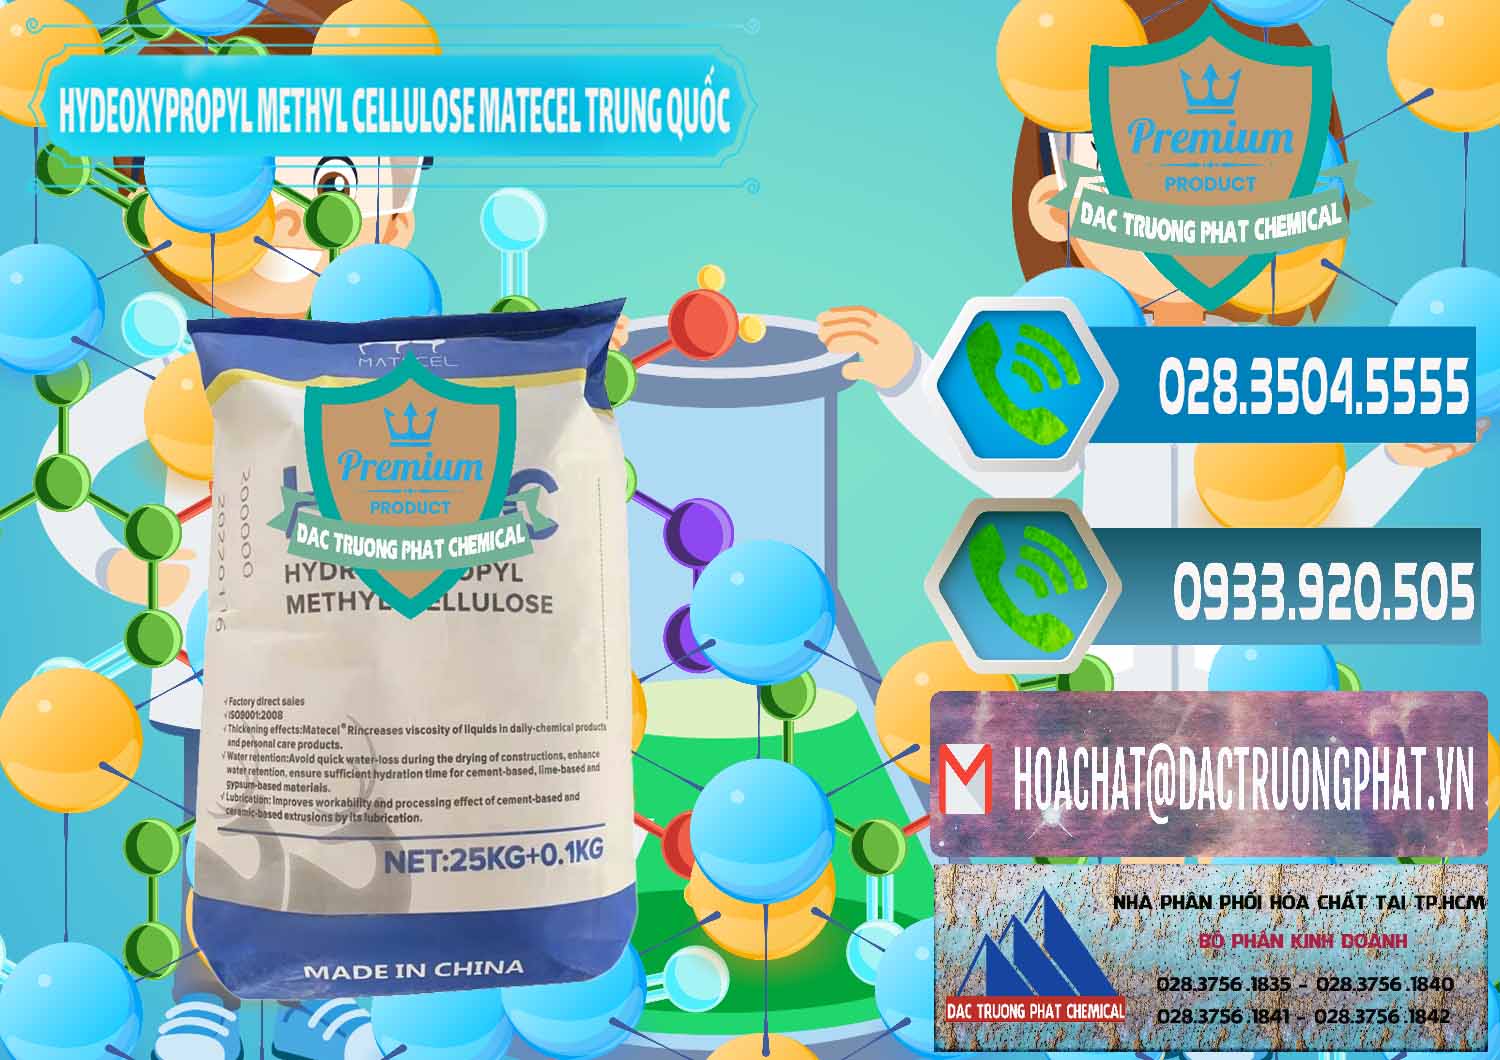 Cty phân phối - bán Chất Tạo Đặc HPMC - Hydroxypropyl Methyl Cellulose Matecel Trung Quốc China - 0396 - Đơn vị chuyên cung cấp - kinh doanh hóa chất tại TP.HCM - congtyhoachat.net